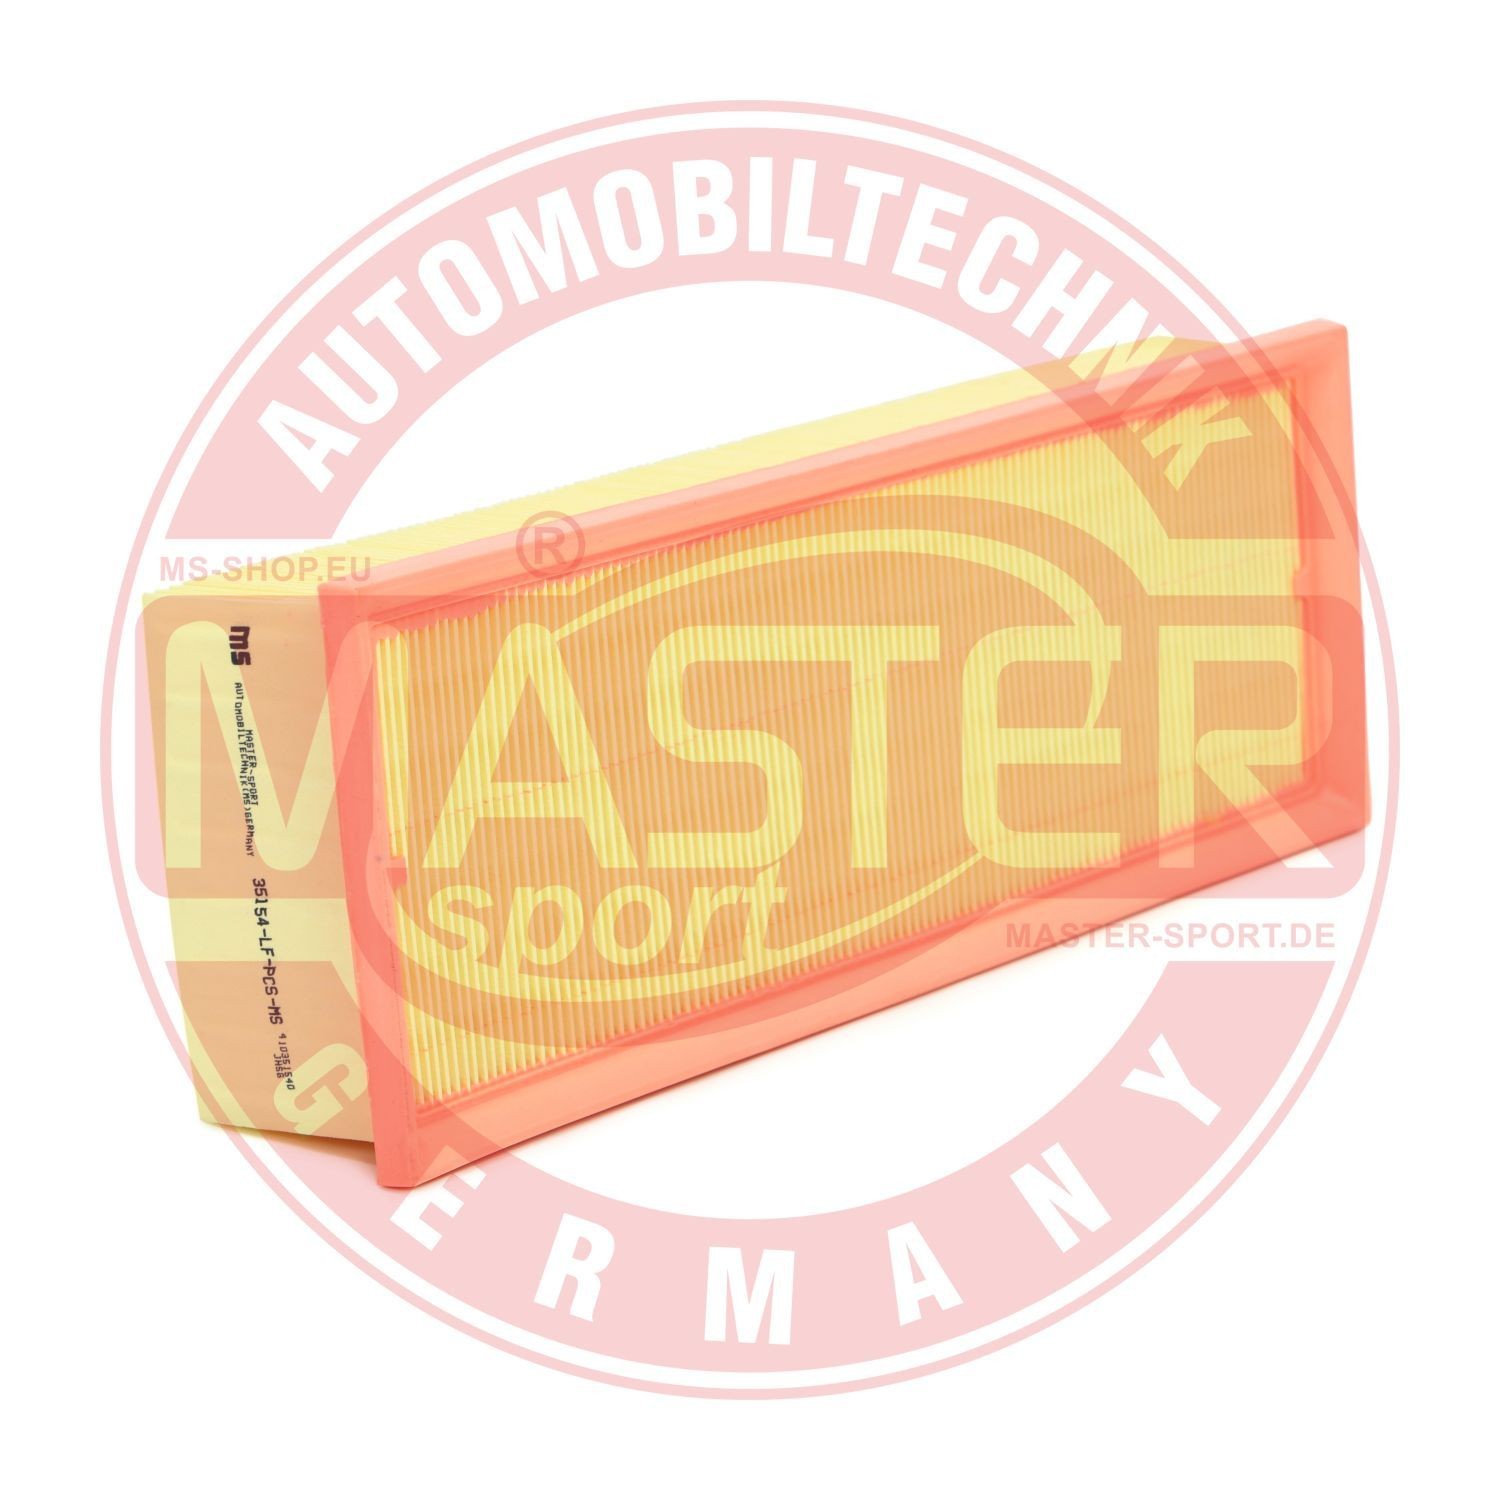 MASTER-SPORT HD413515400 Engine filter 70mm, 136mm, 345mm, Filter Insert